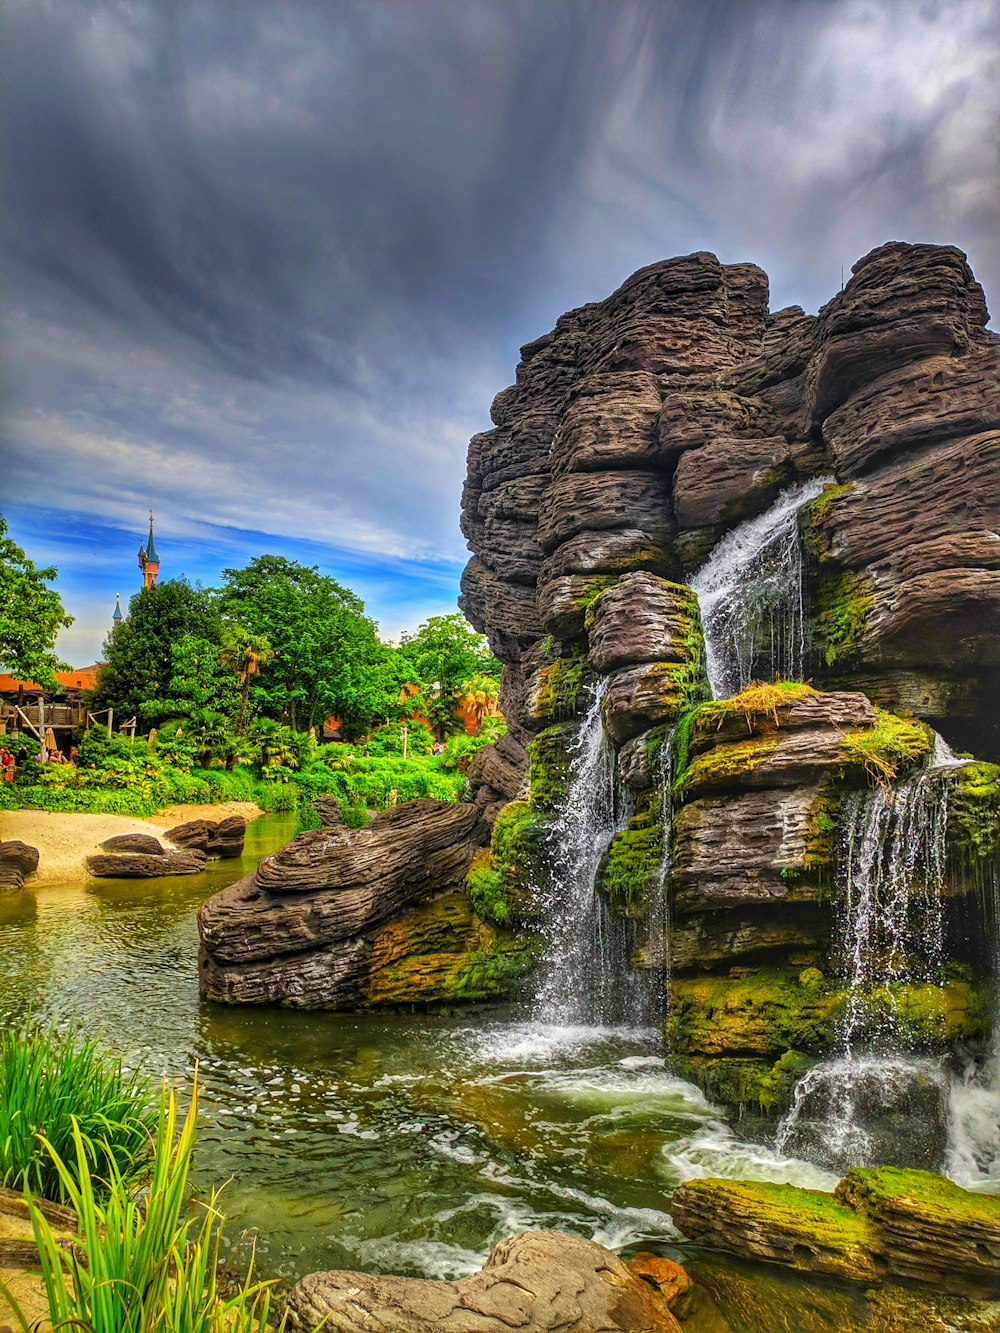 Ein Wasserfall inmitten eines üppigen grünen Parks